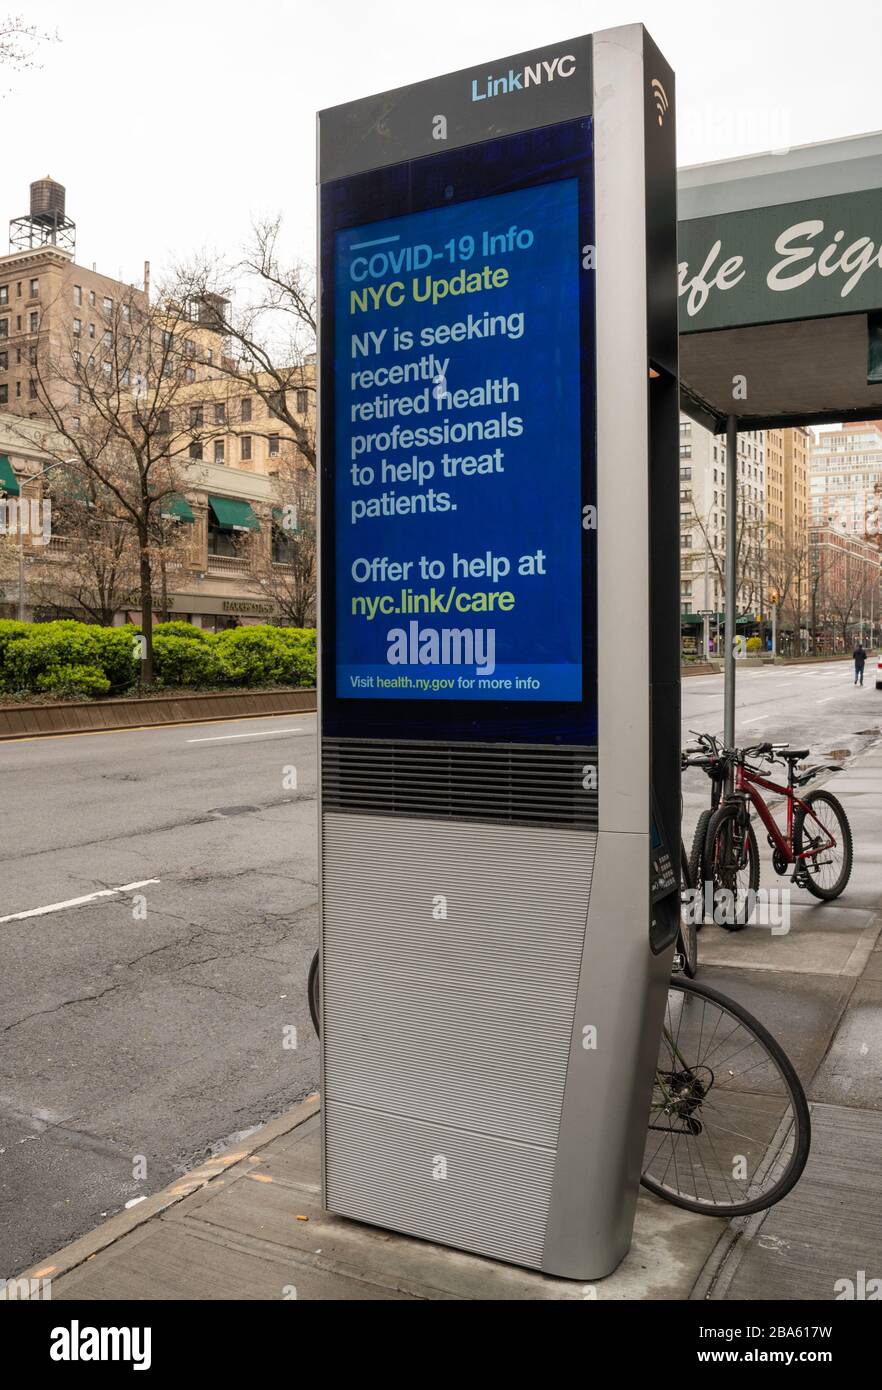 NUEVA YORK, NY - 25 DE MARZO DE 2020. Los mensajes del Servicio público sobre el brote de coronavirus se muestran en un kiosco LinkNYC en el Upper West Side de Manhattan en la ciudad de Nueva York. La Organización Mundial de la Salud declaró que el coronavirus (COVID-19) es una pandemia mundial el 11 de marzo. Foto de stock